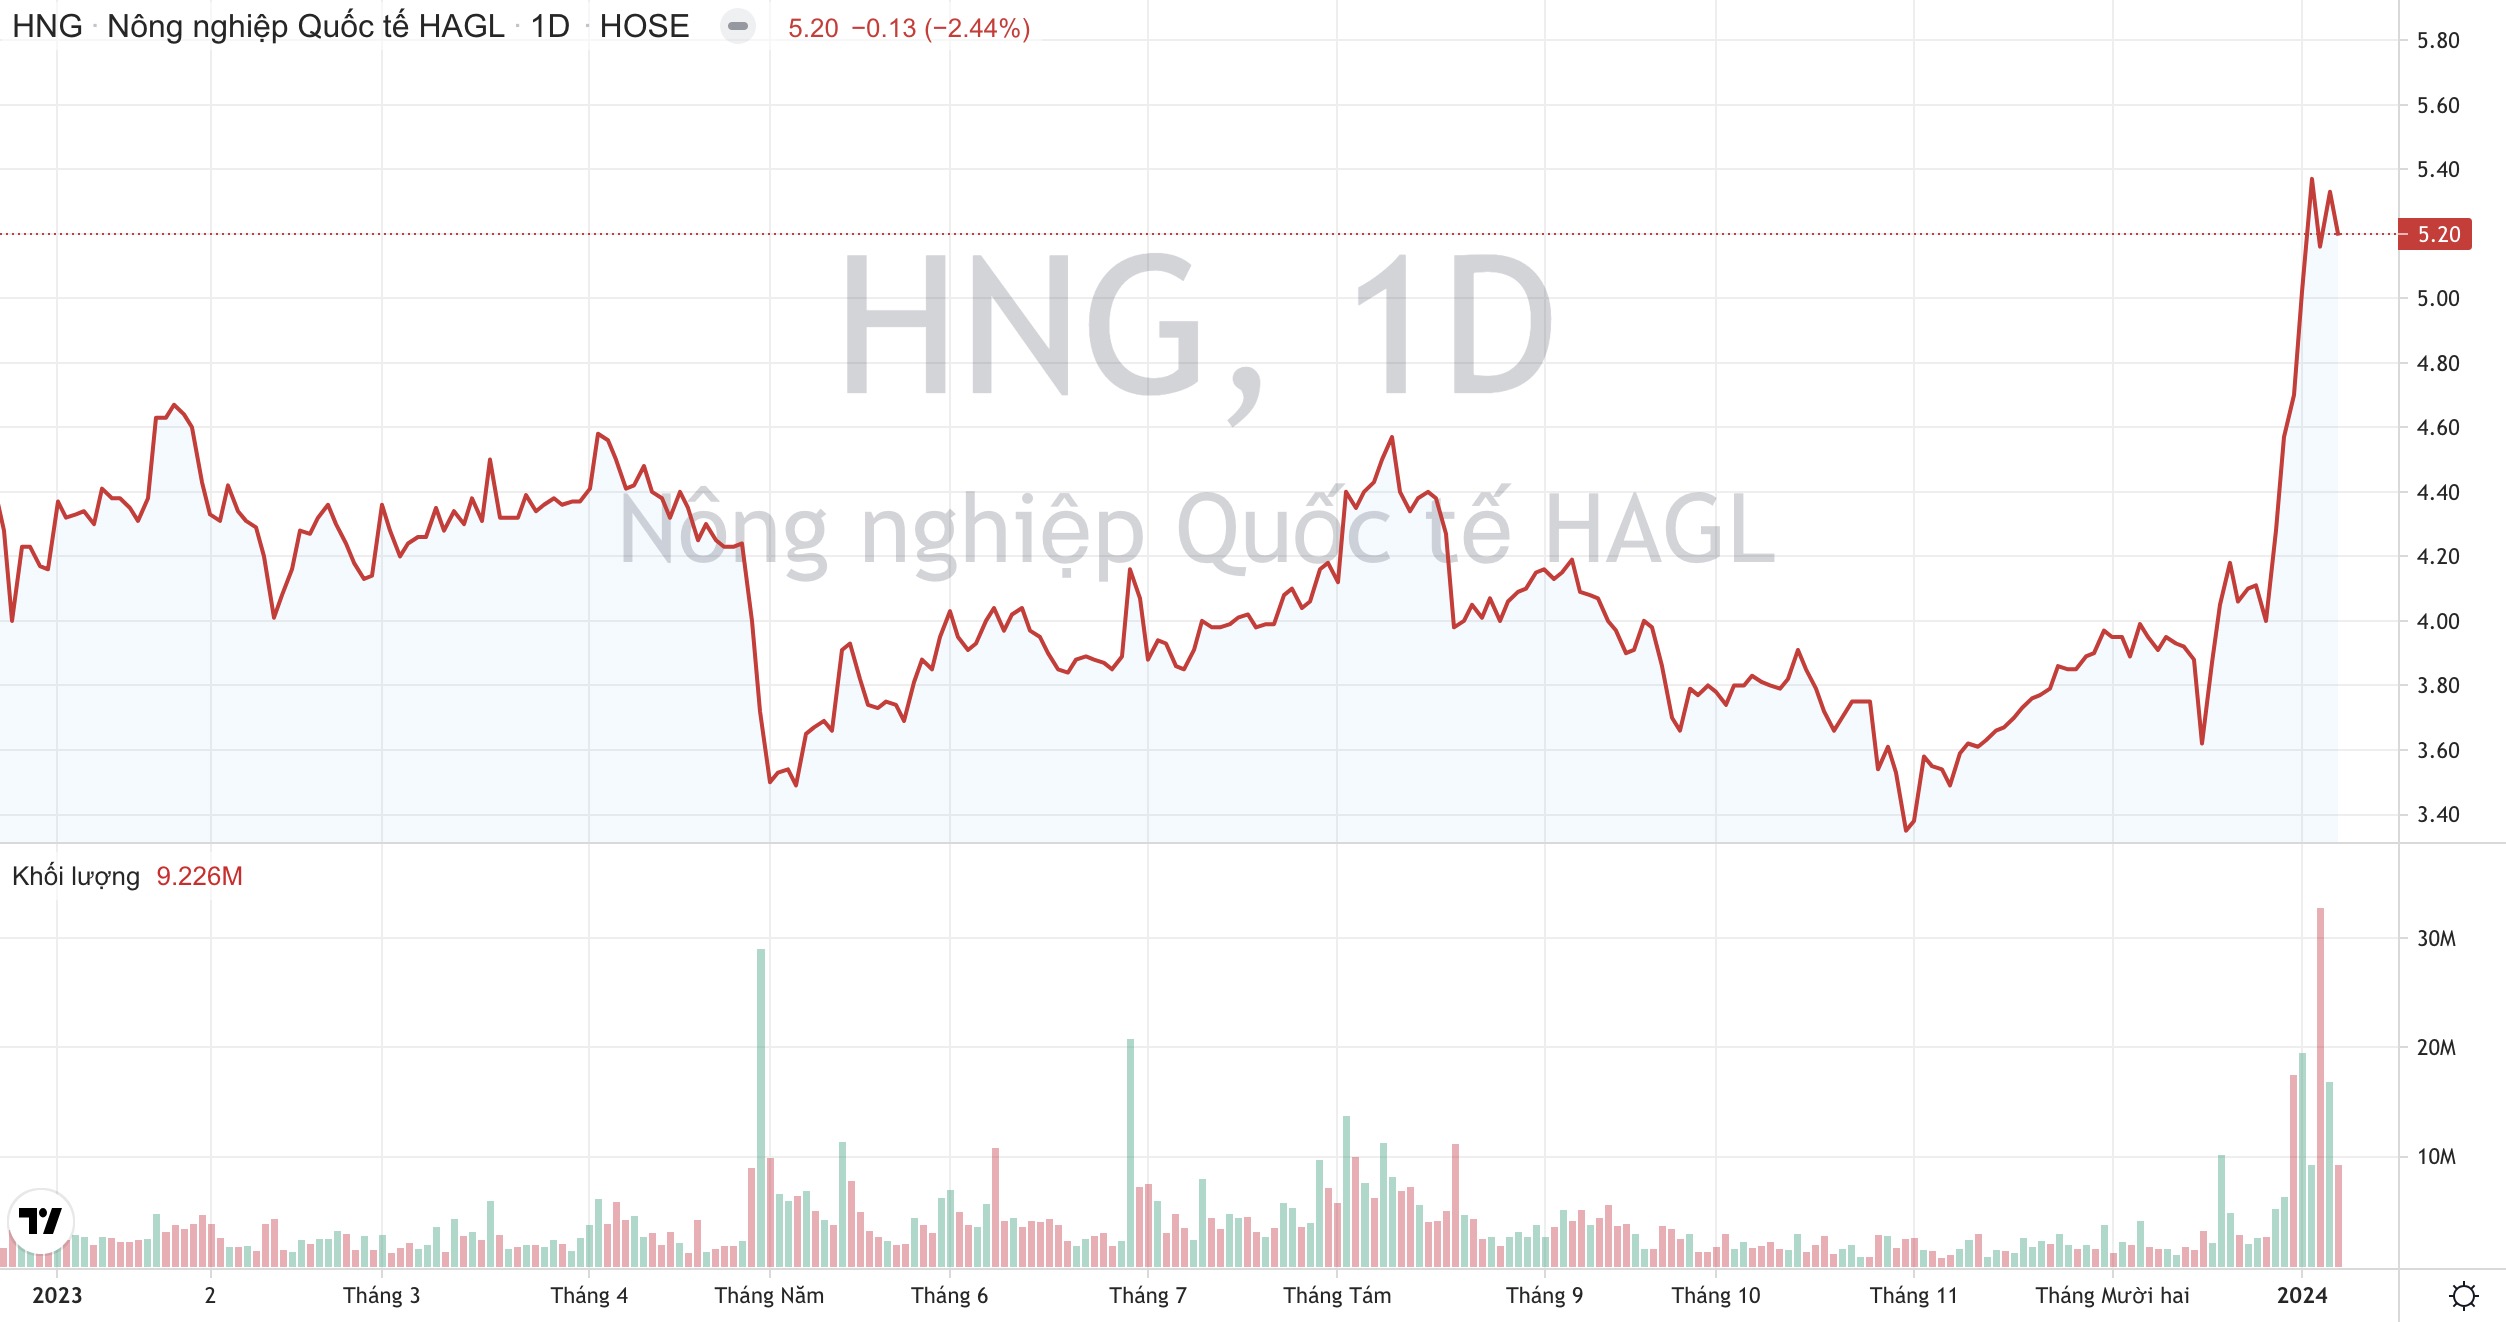 Cổ phiếu HNG tăng nóng, Hoàng Anh Gia Lai HAG bắt đầu thoái vốn khỏi HAGL Agrico 2